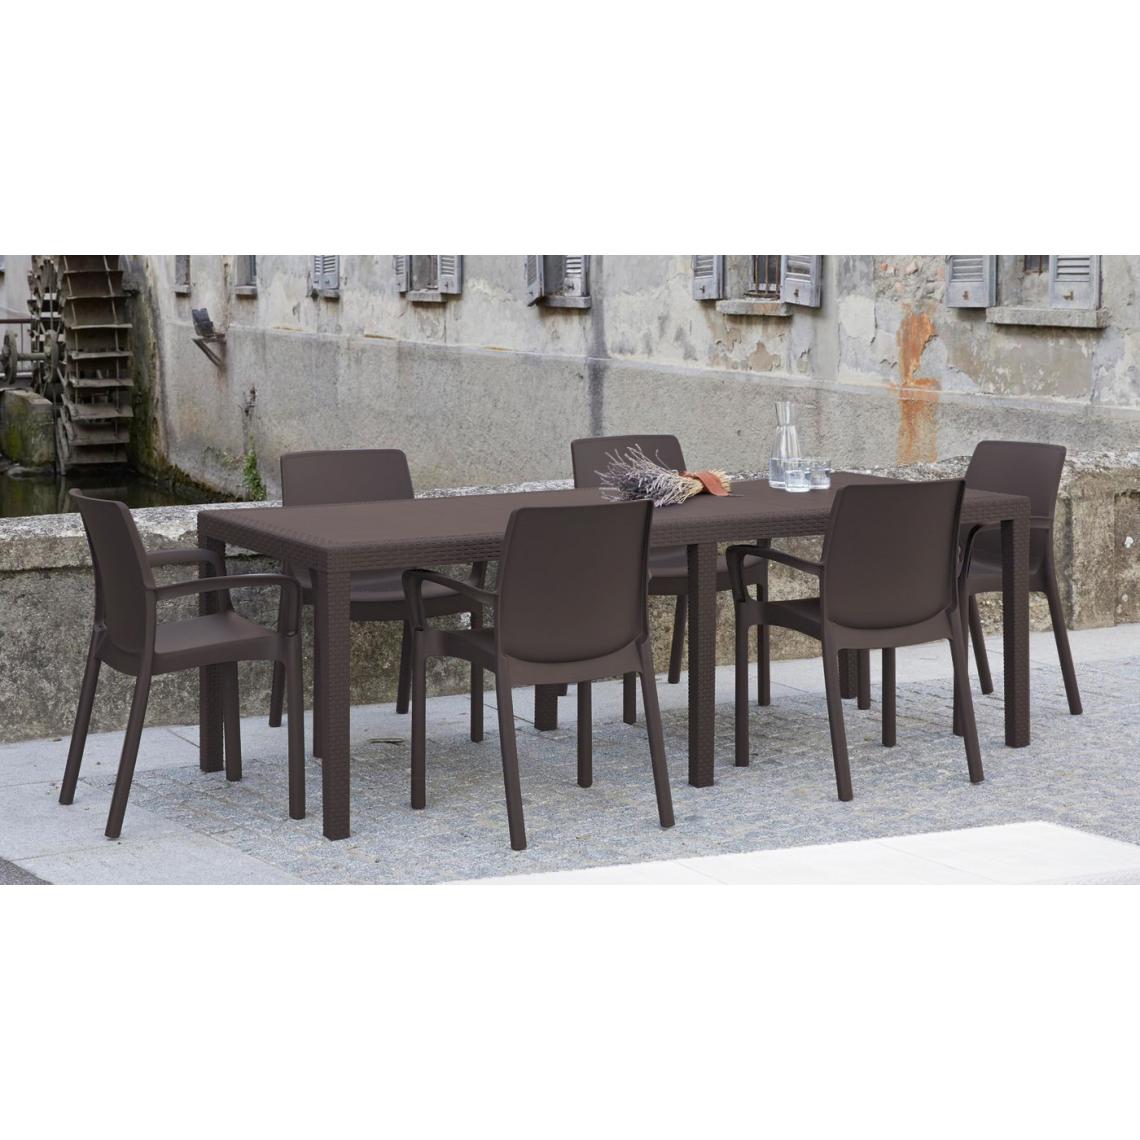 Alter - Table d'extérieur rectangulaire extensible, Made in Italy, couleur marron, Dimensions 150 x 72 x 90 cm (extensible jusqu'à 220 cm) - Tables à manger